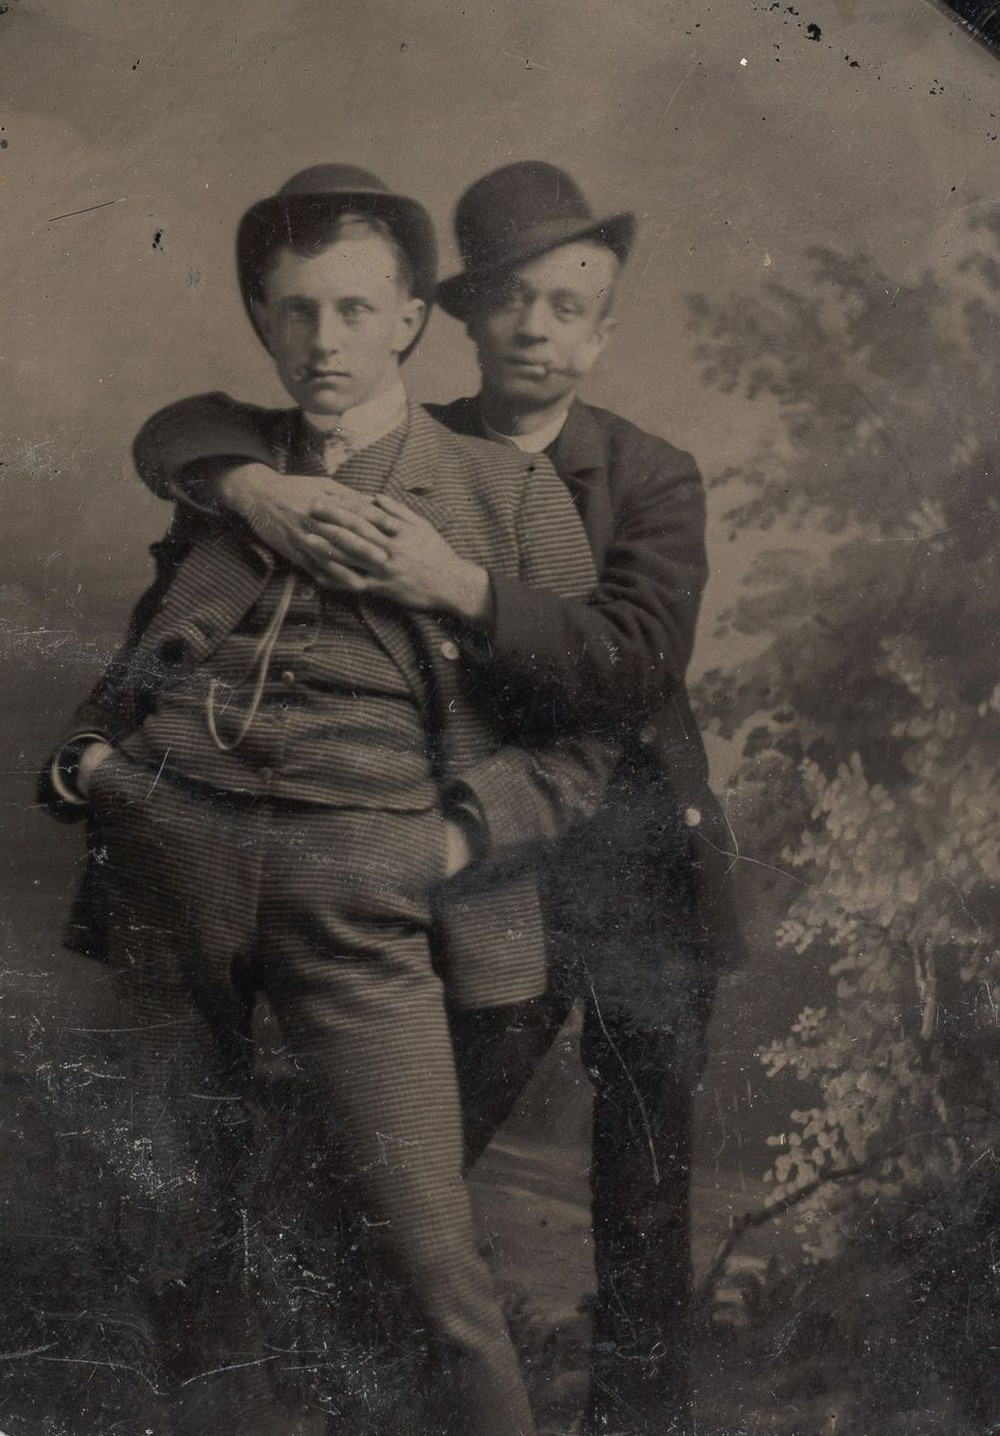 Броманс в викторианскую эпоху: интимные мужские объятия в редких фотографиях конца 1800-х годов  10